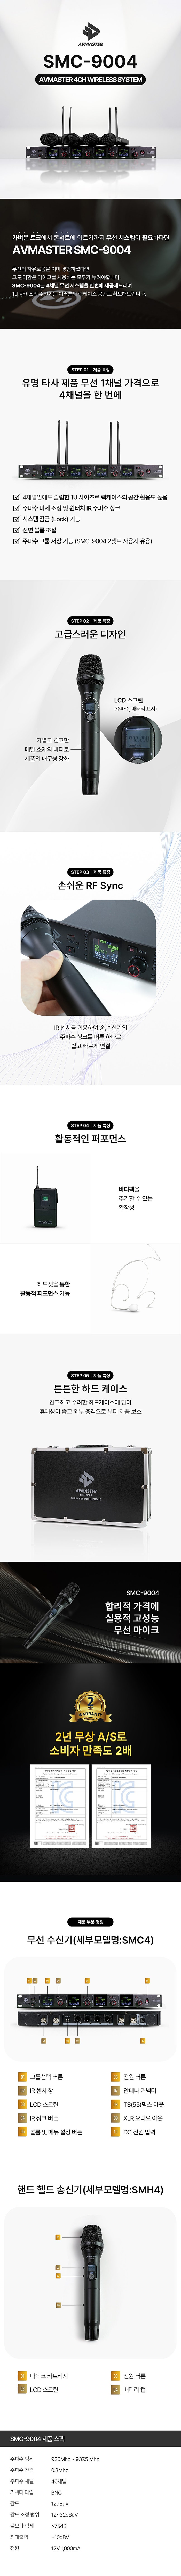 고성능 무선마이크 4채널 SMC-9004 신품 팝니다. (교회 찬양팀, 뮤지컬 연극, 행사용 전문마이크)